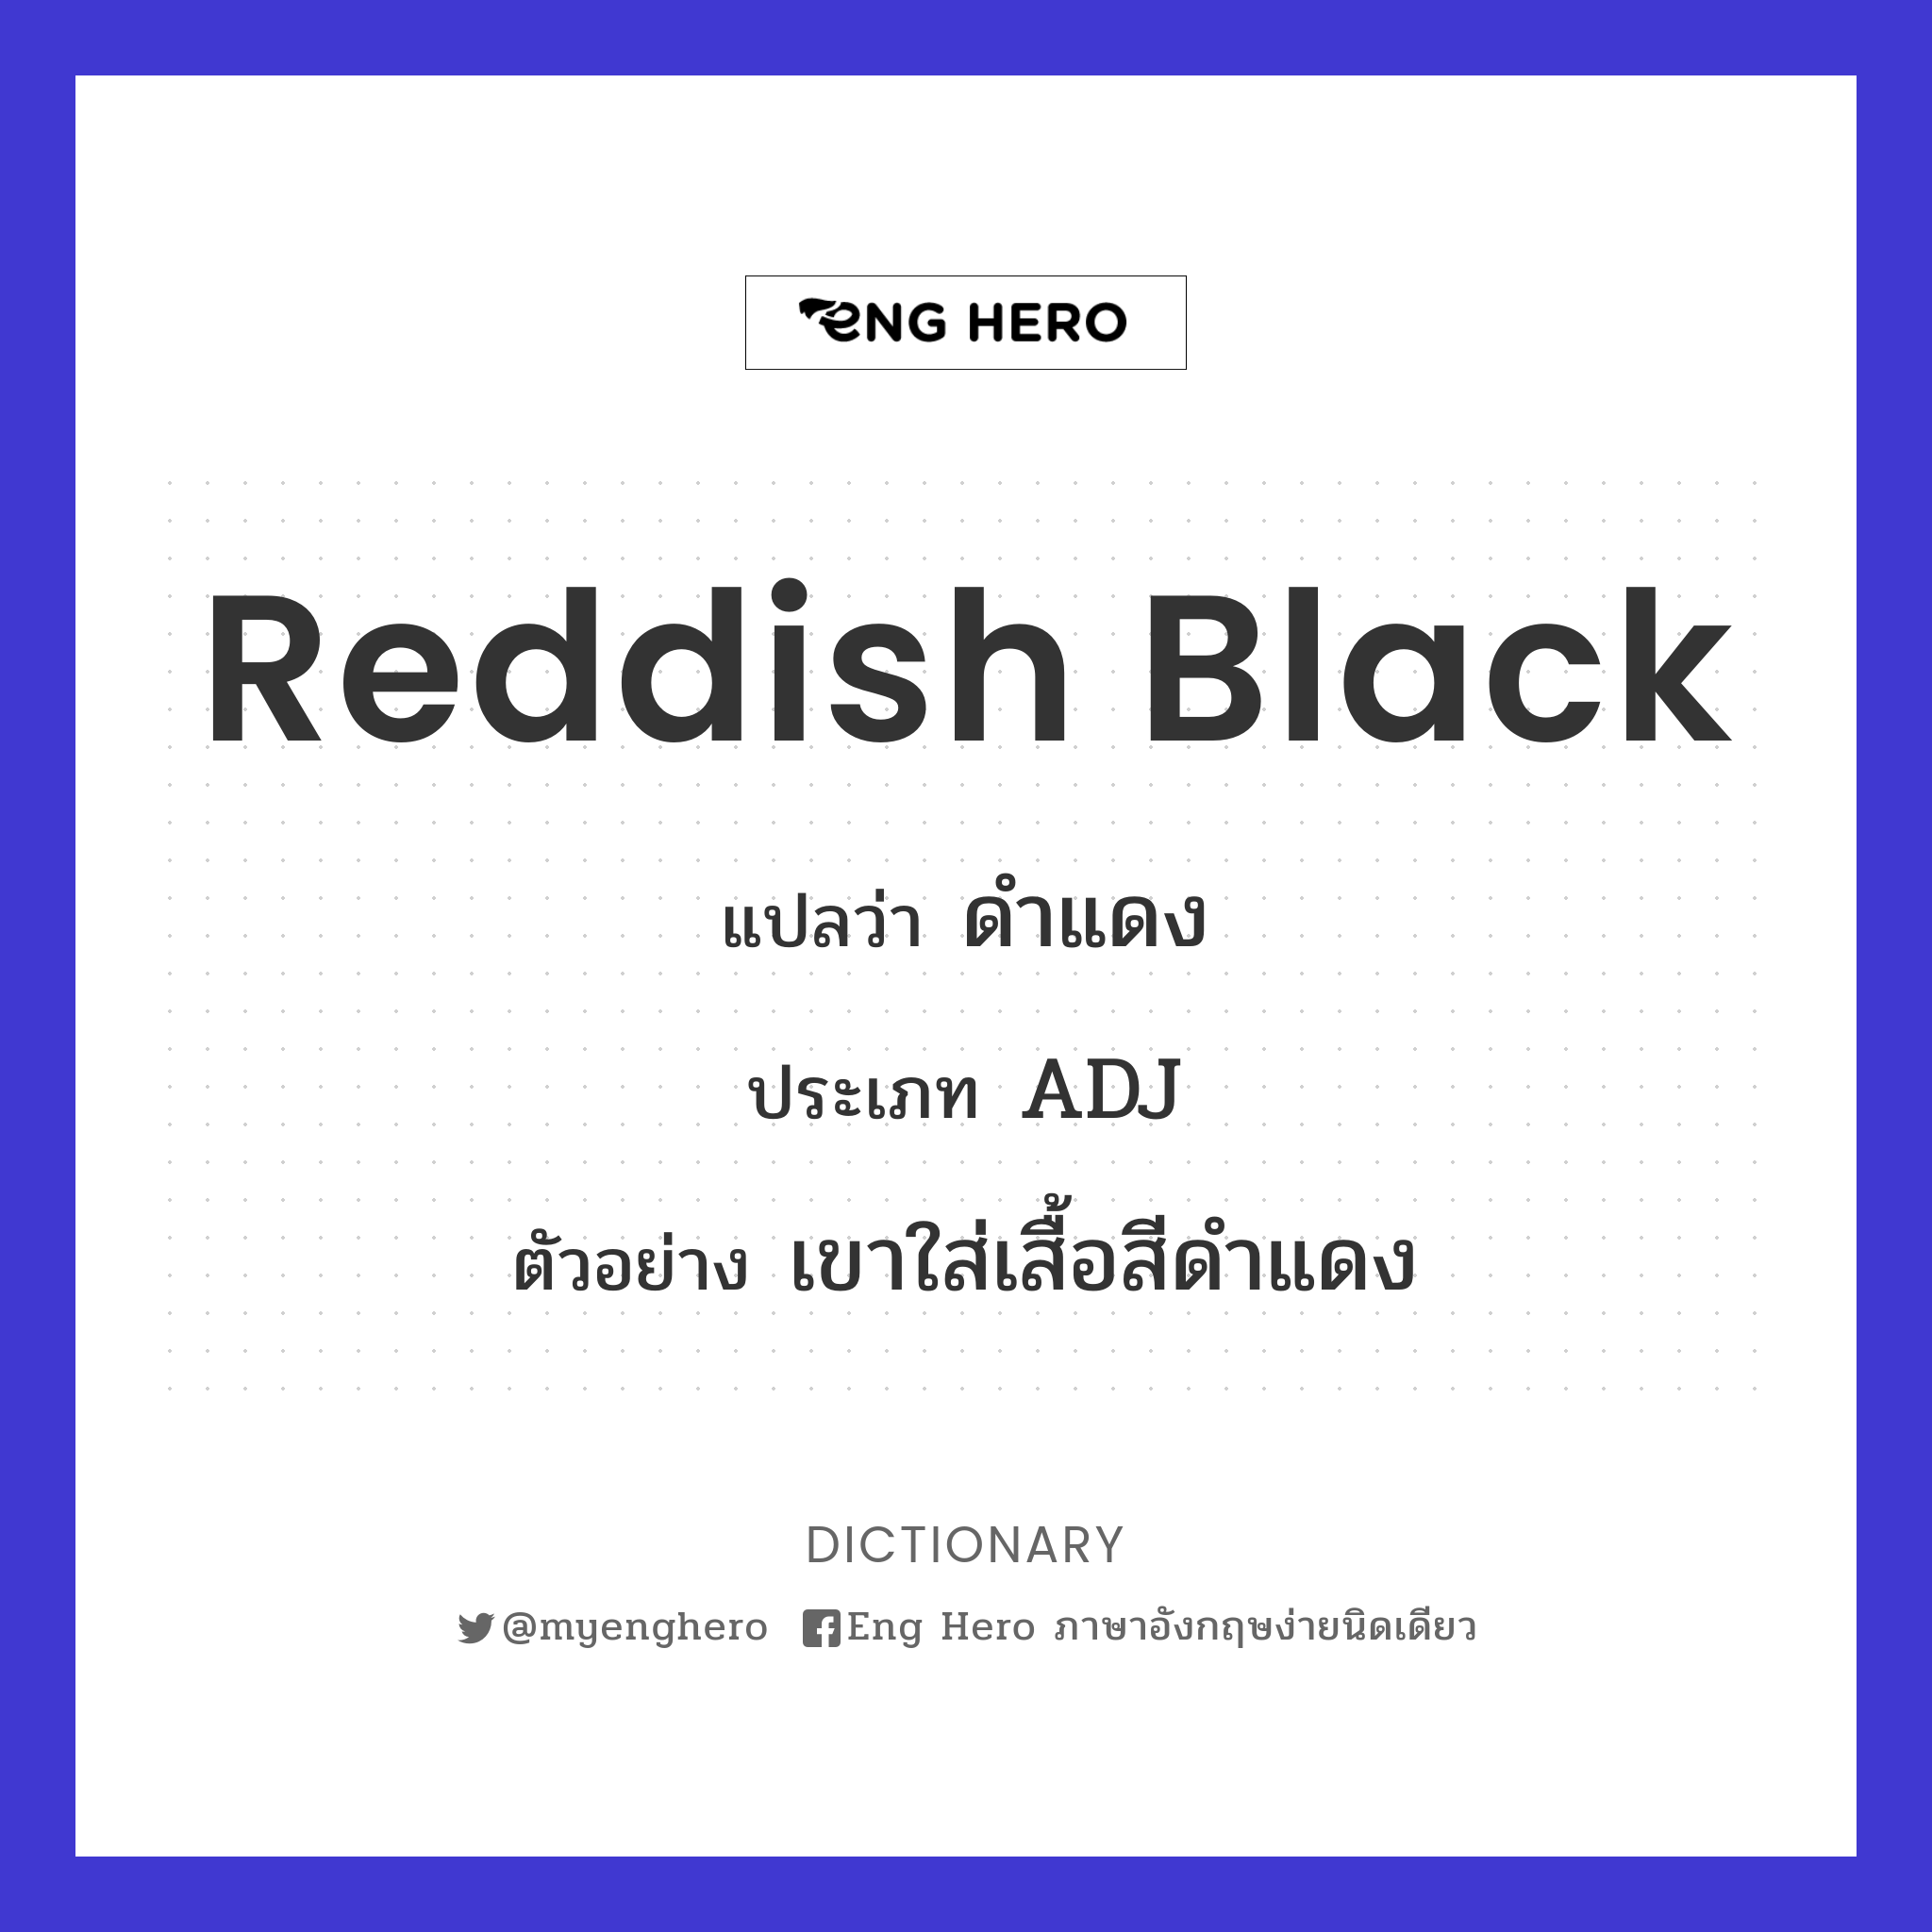 reddish black